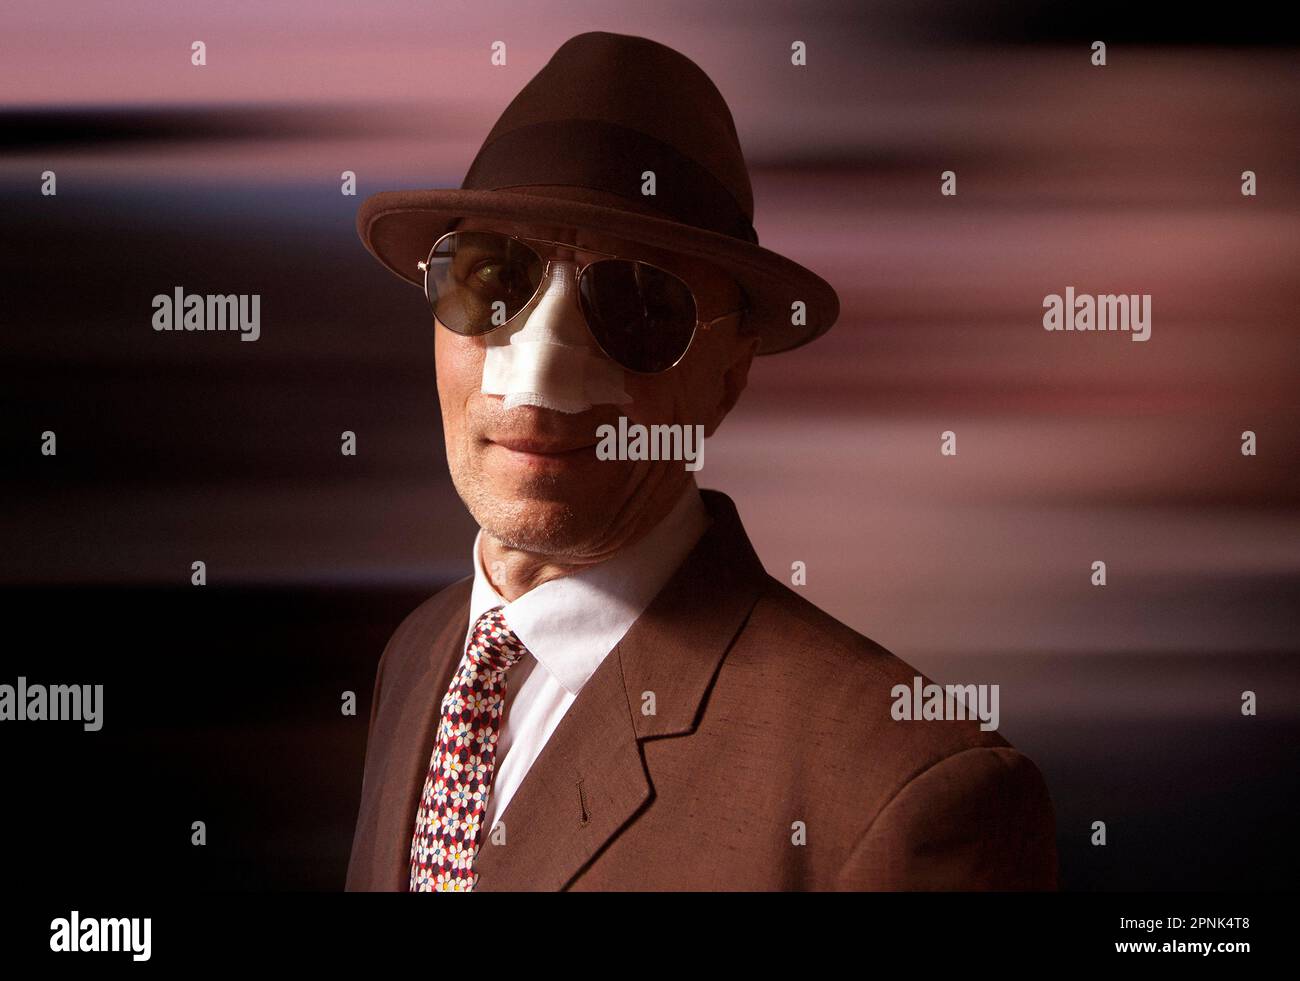 Homme en costume, chapeau et lunettes de soleil avec bandage sur son nez Banque D'Images